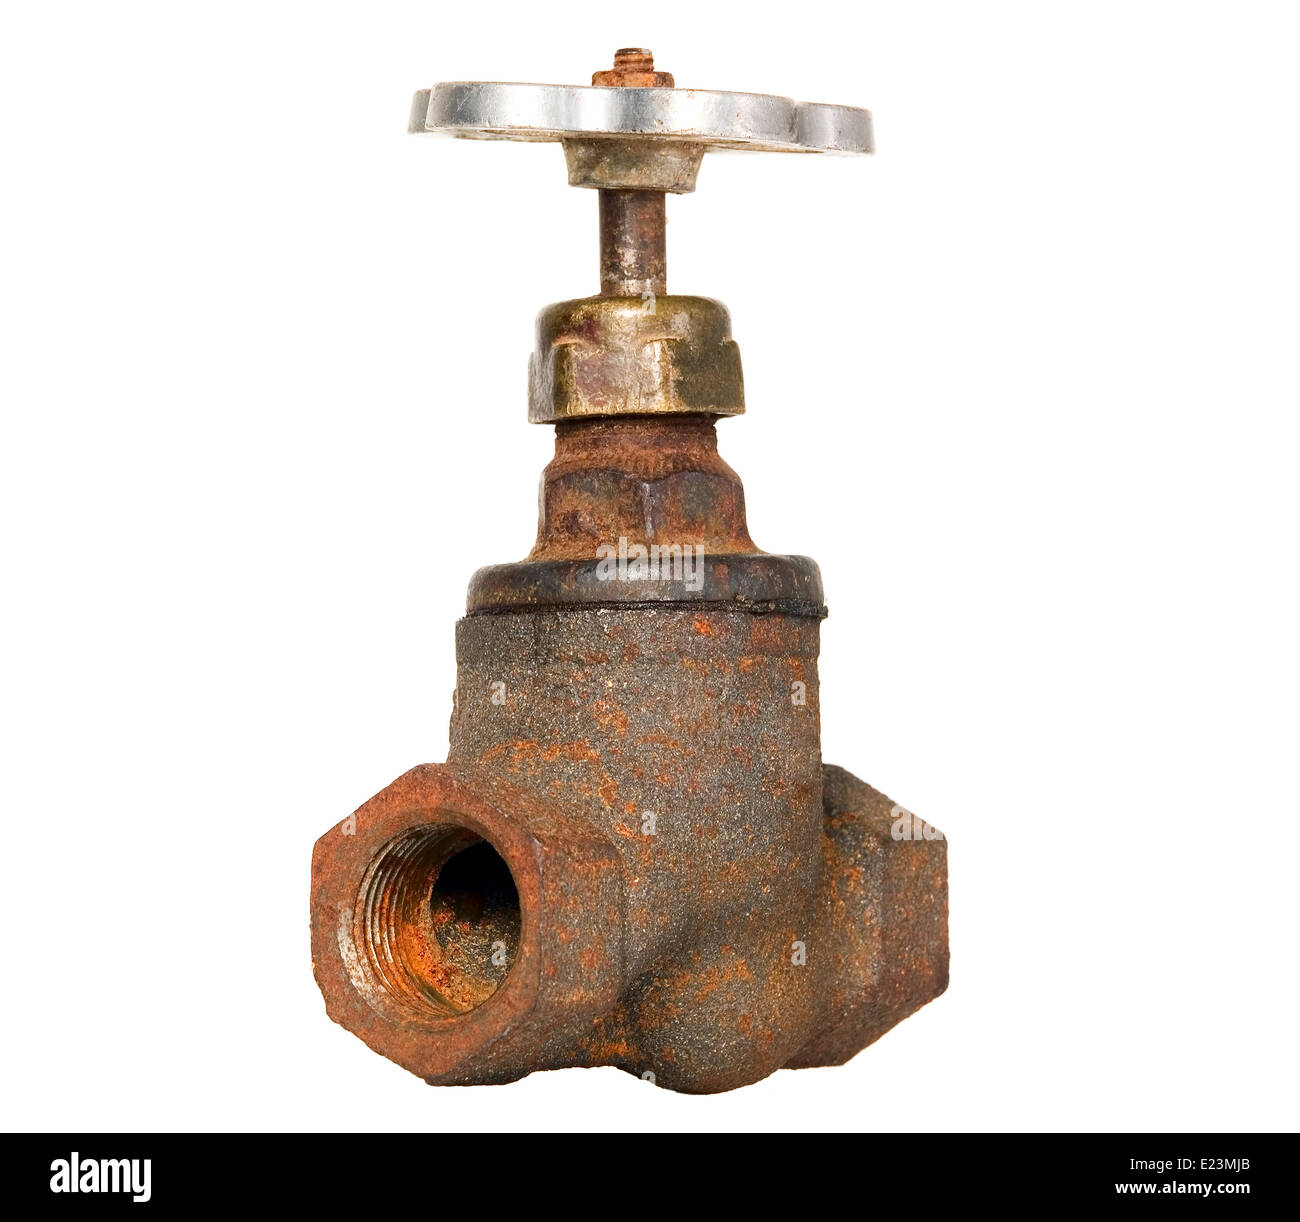 Old rusty brown tuyau avec grue, outil de plomberie industrielle Banque D'Images